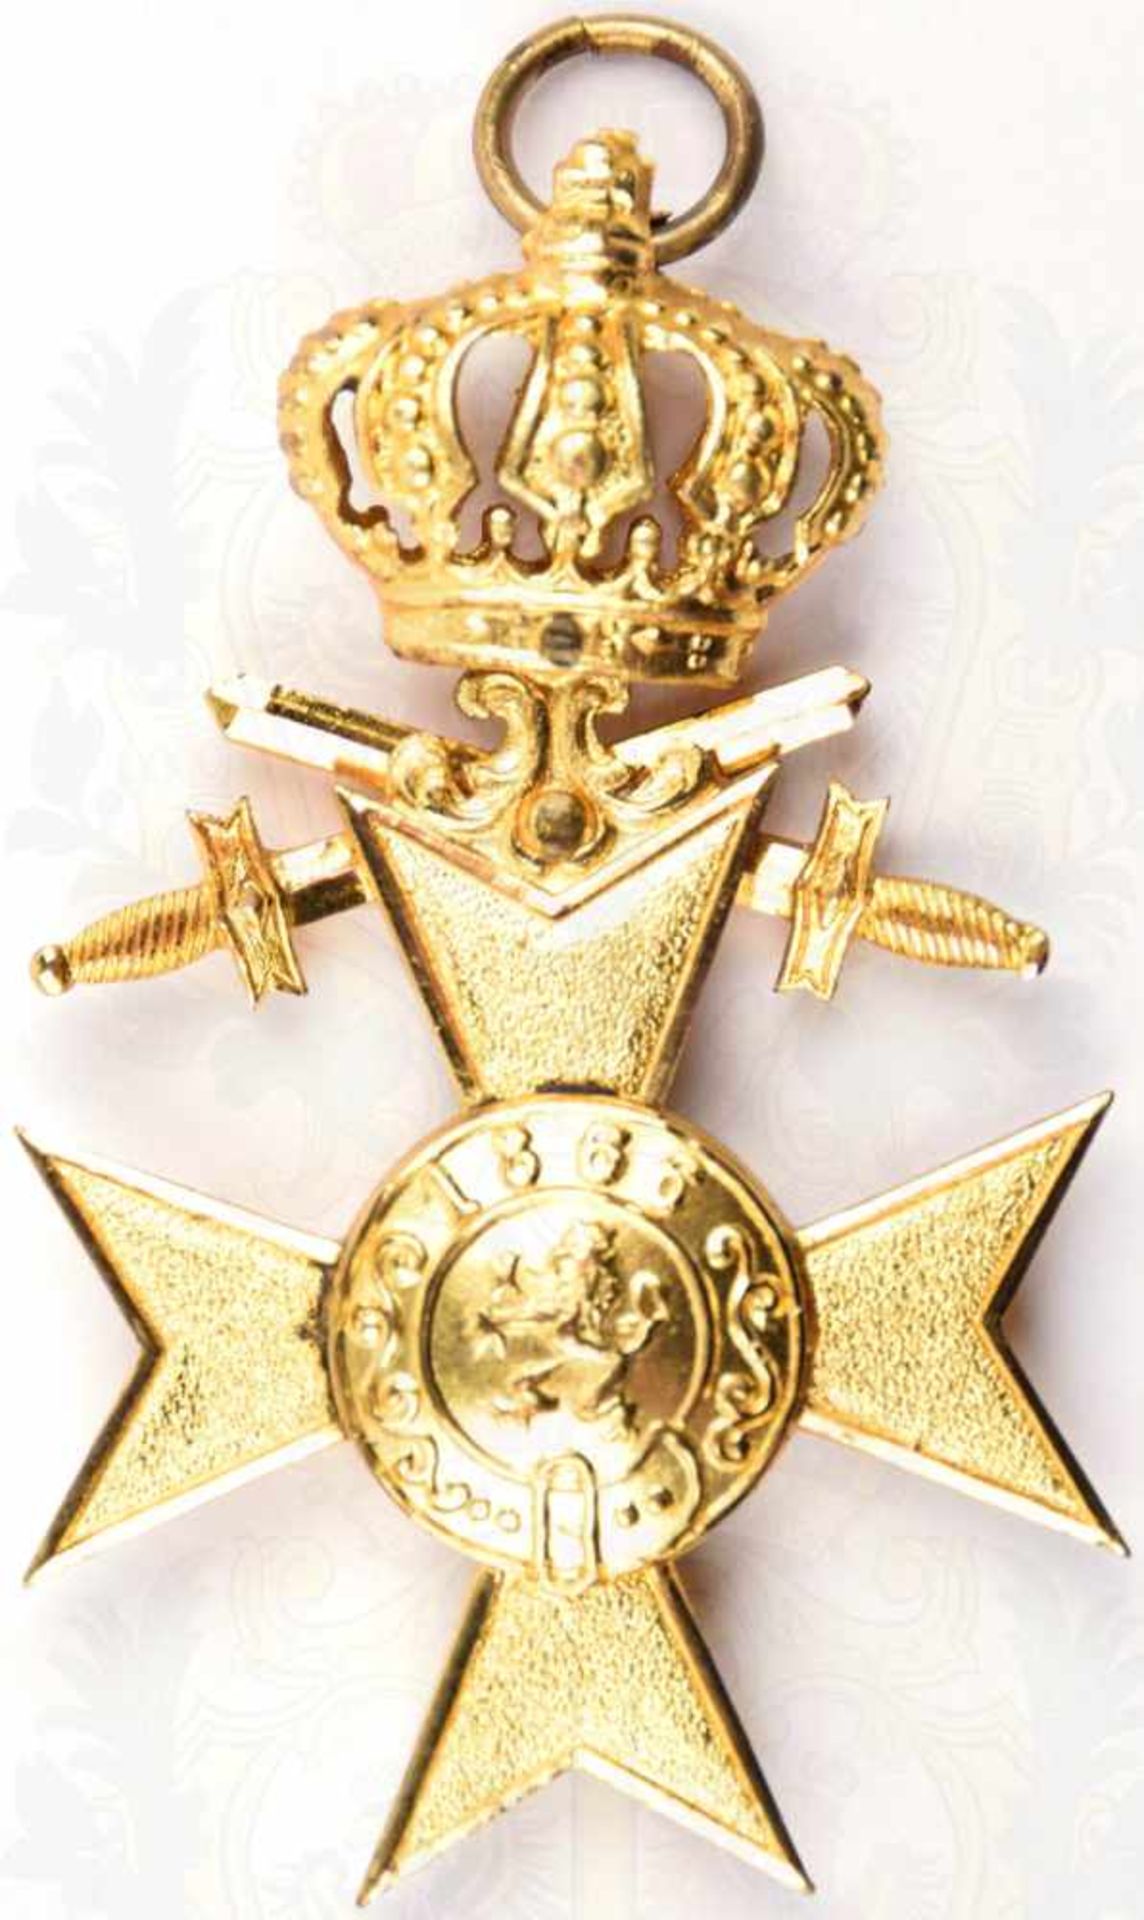 BAYERN MILITÄRVERDIENSTKREUZ 1. KLASSE, mit Krone u. Schwertern, Bronze/vergoldet, vorderes - Bild 3 aus 3